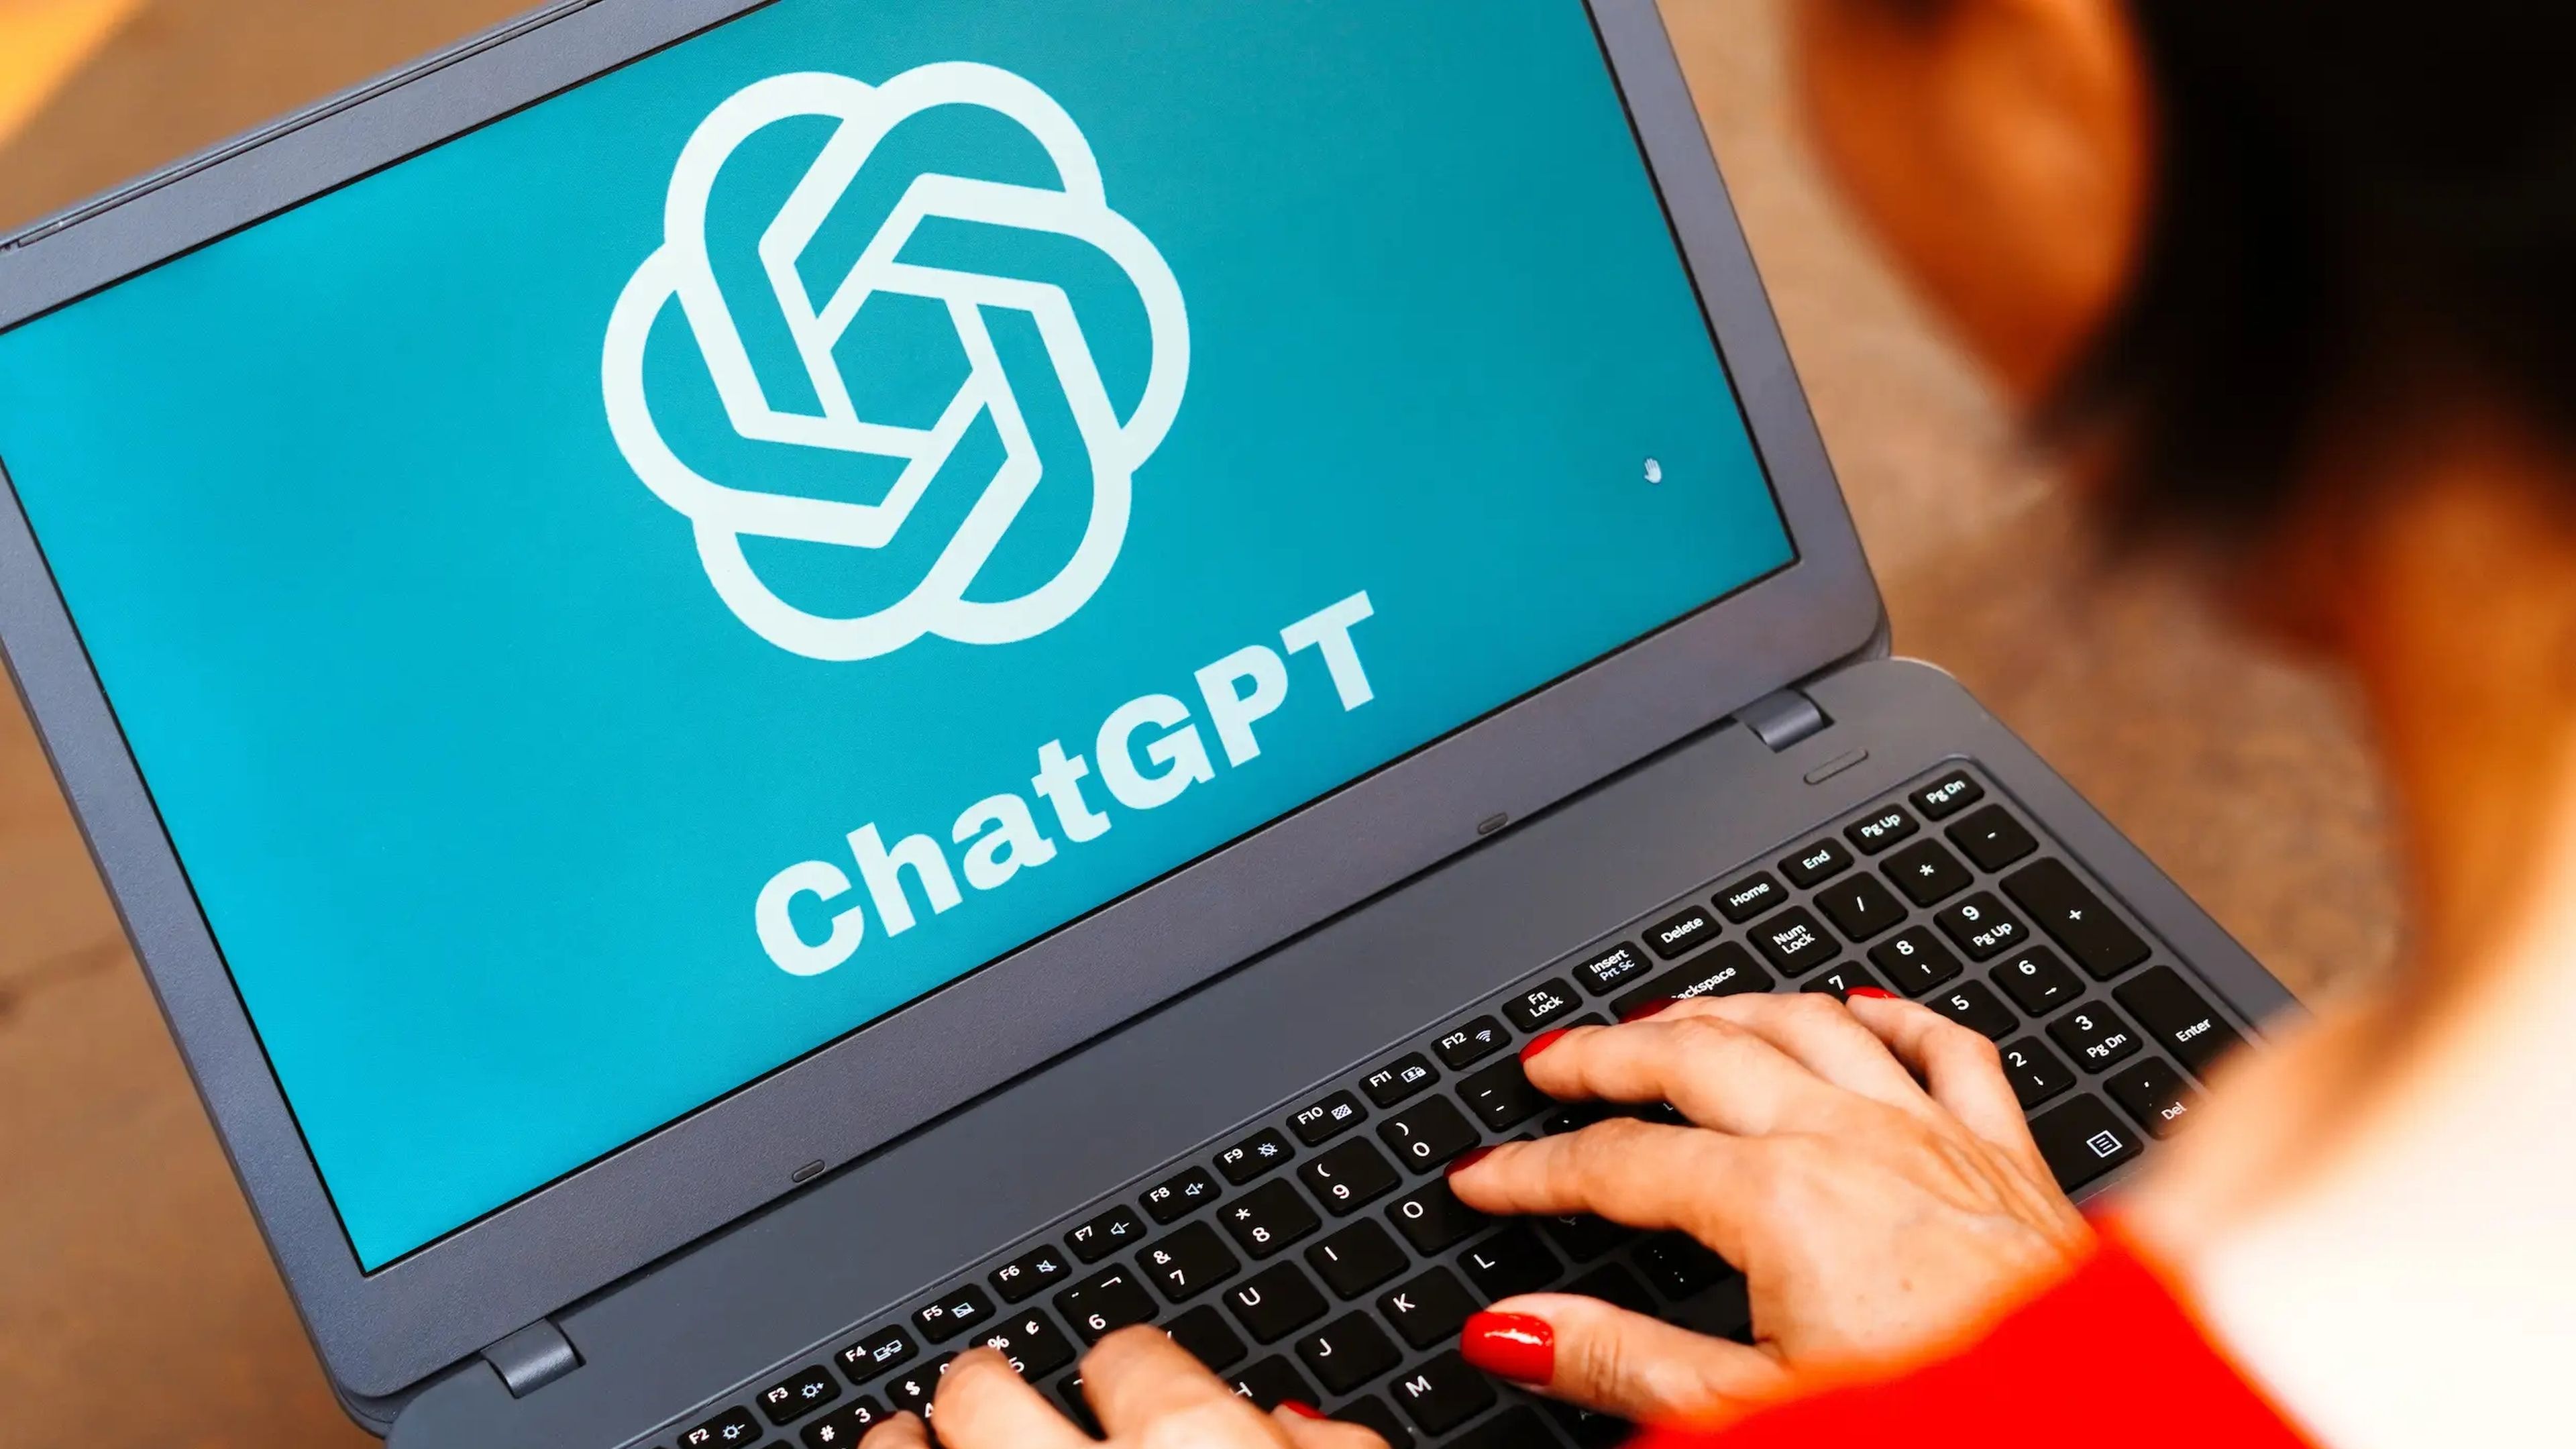 Una imagen de un ordenador portátil con el logo de ChatGPT.